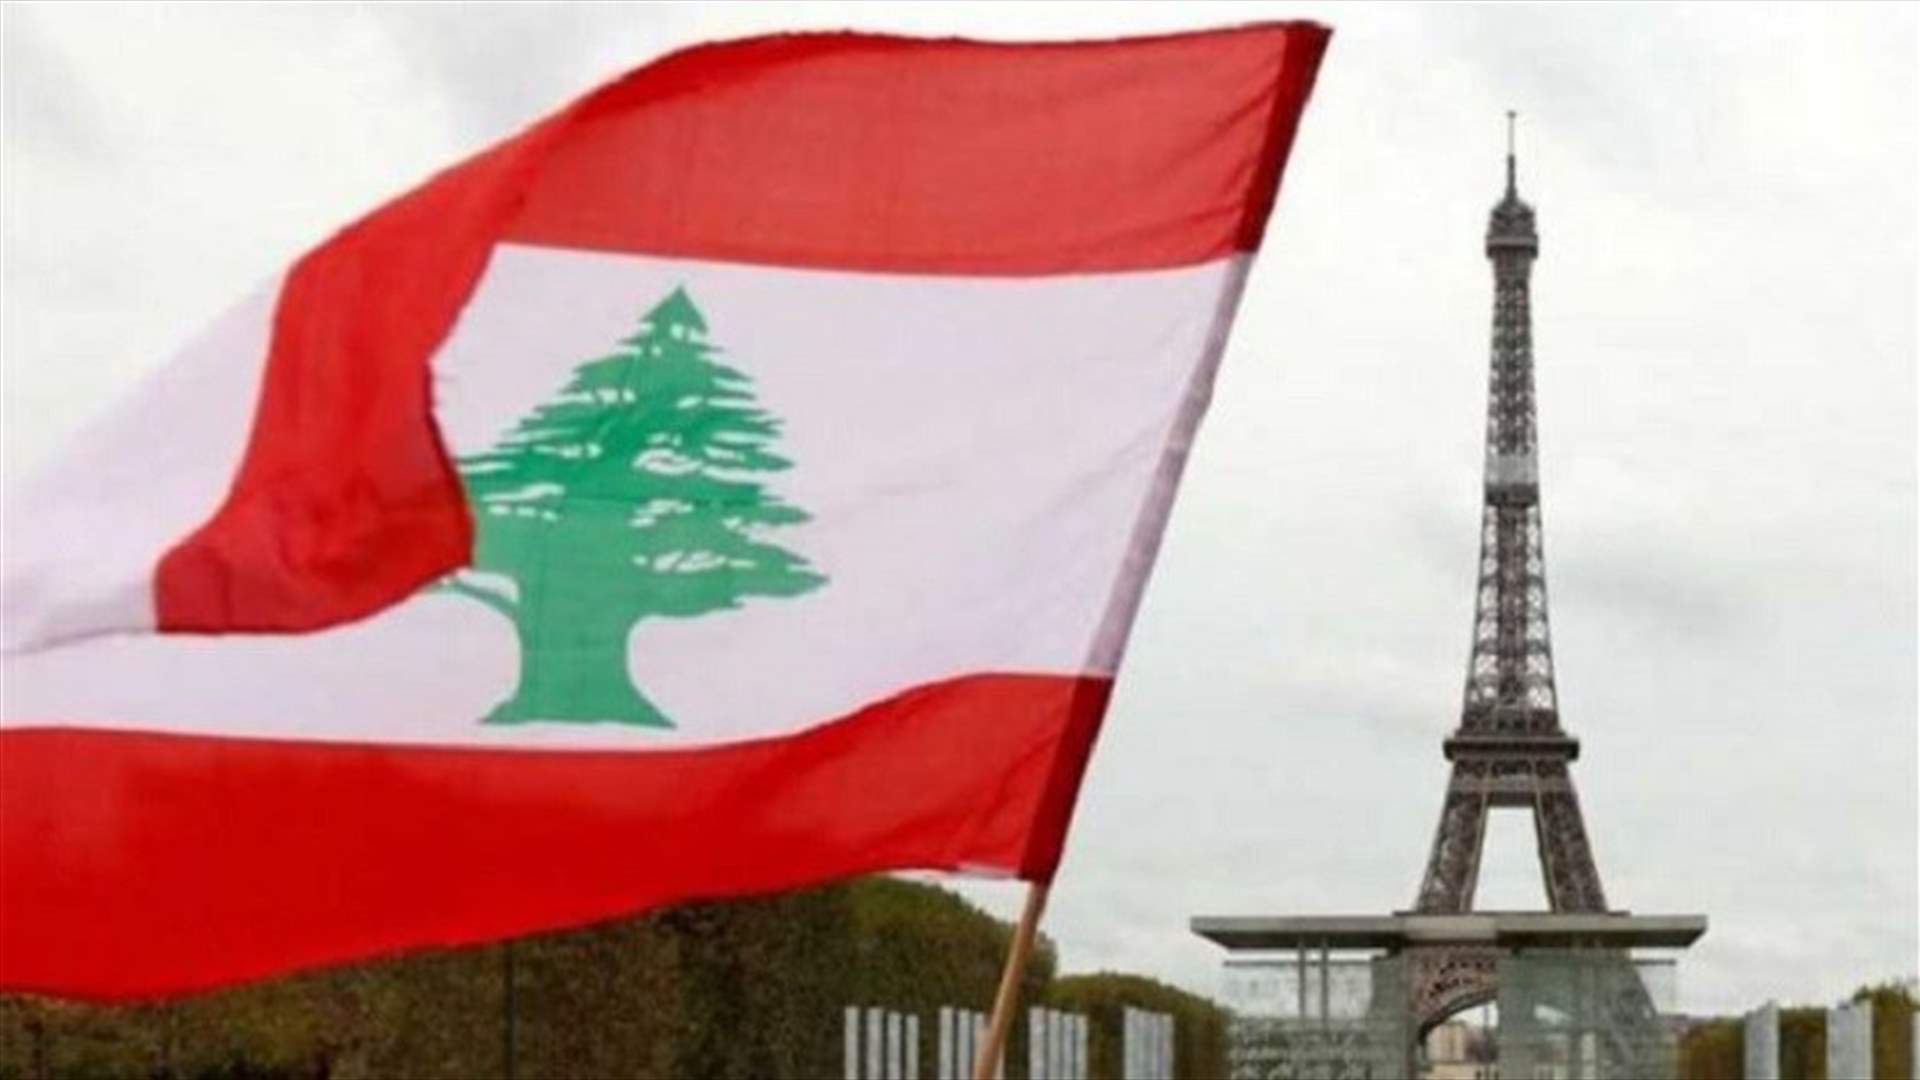 الخارجية الفرنسية: لن نتردد بالعمل ضد من تخلوا عن المصلحة العامة في لبنان!